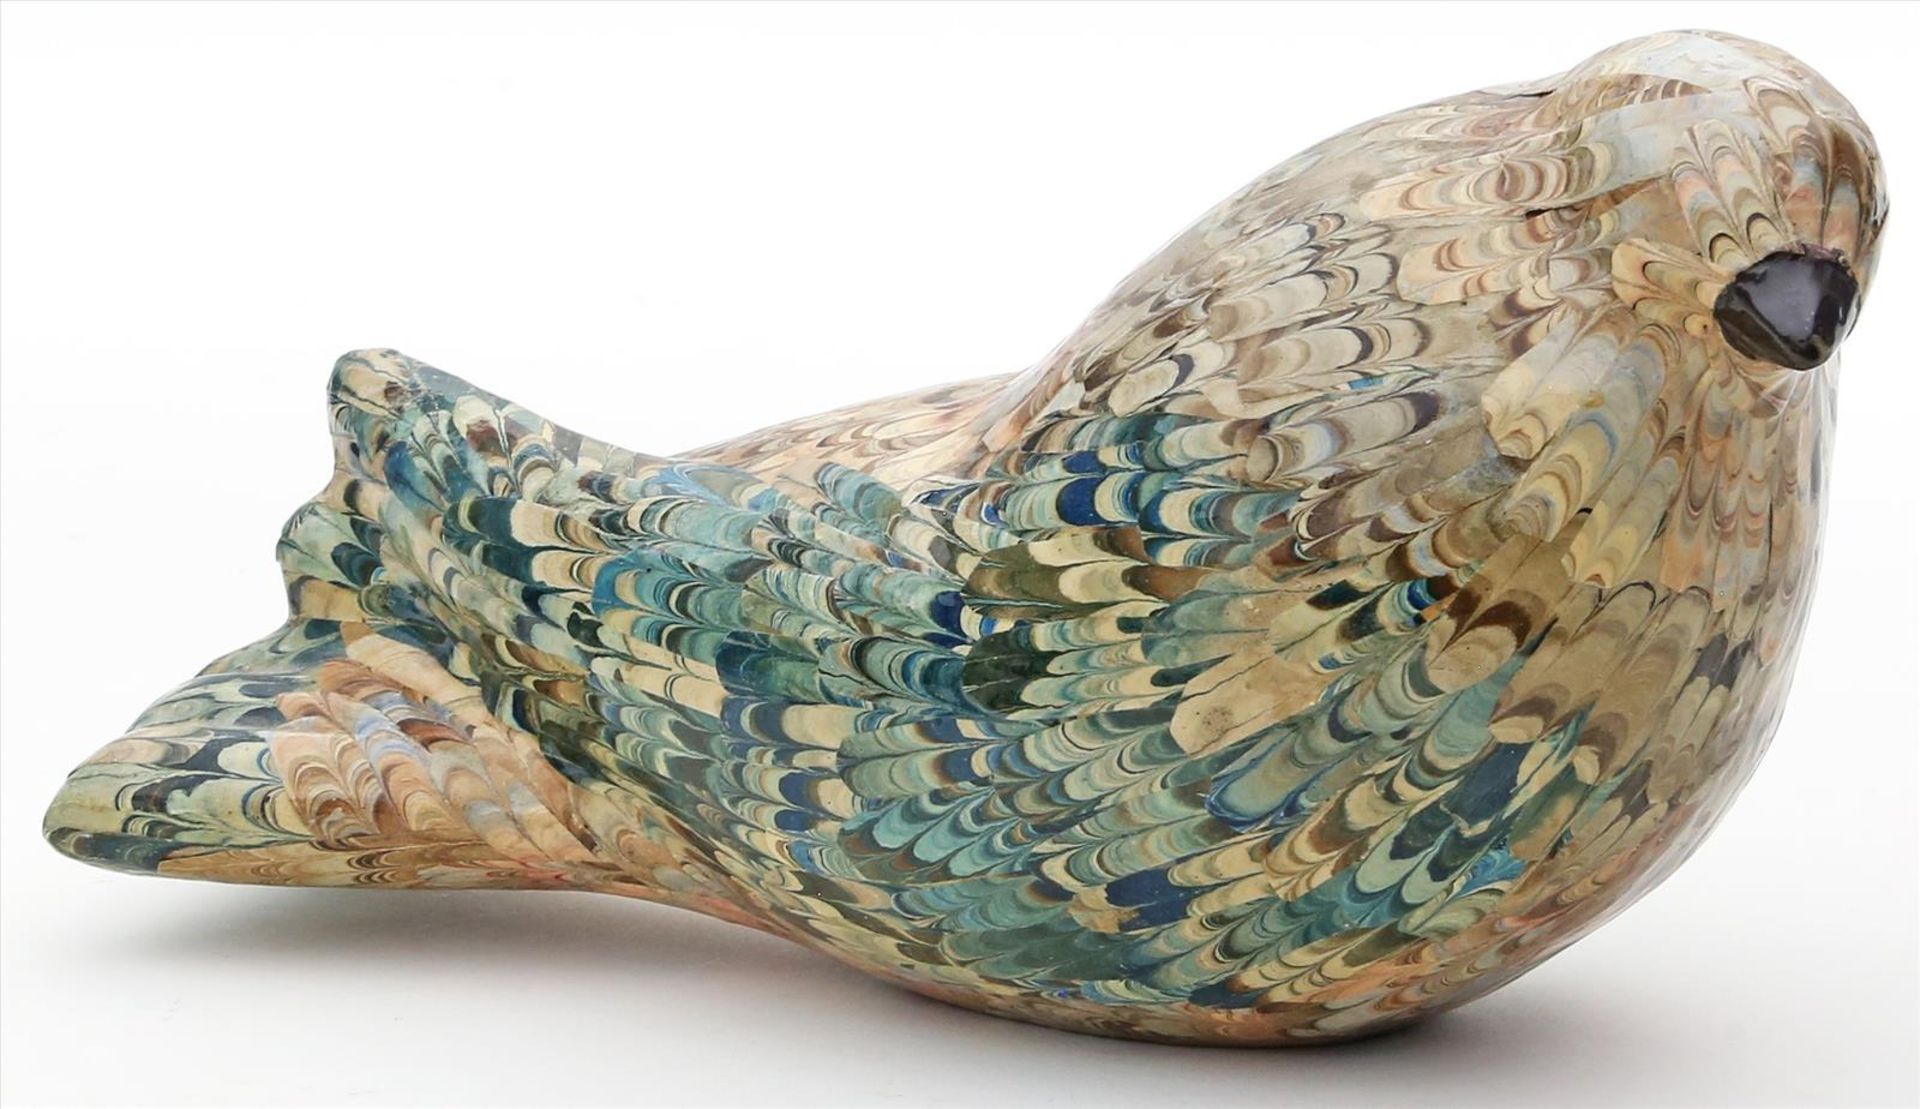 Sitzende Taube.Holz, geschnitzt, bunt marmorierte Fassung. Unter dem Boden bez. "Handmade in Italy